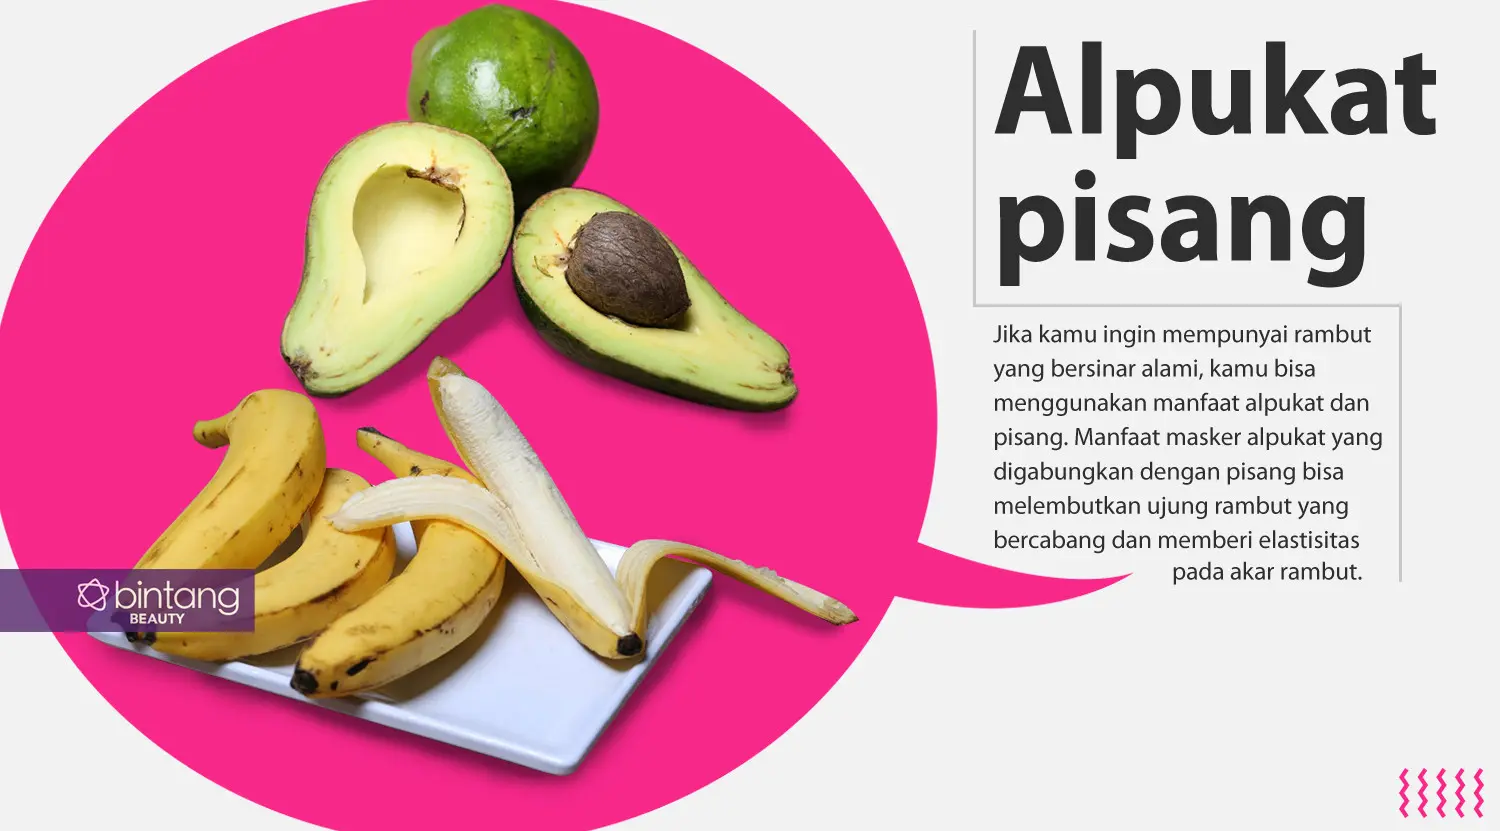 Alpukat dan pisang. (Foto: Adrian Putra/Bintang.com, Digital Imaging: Nurman Abdul Hakim/Bintang.com).